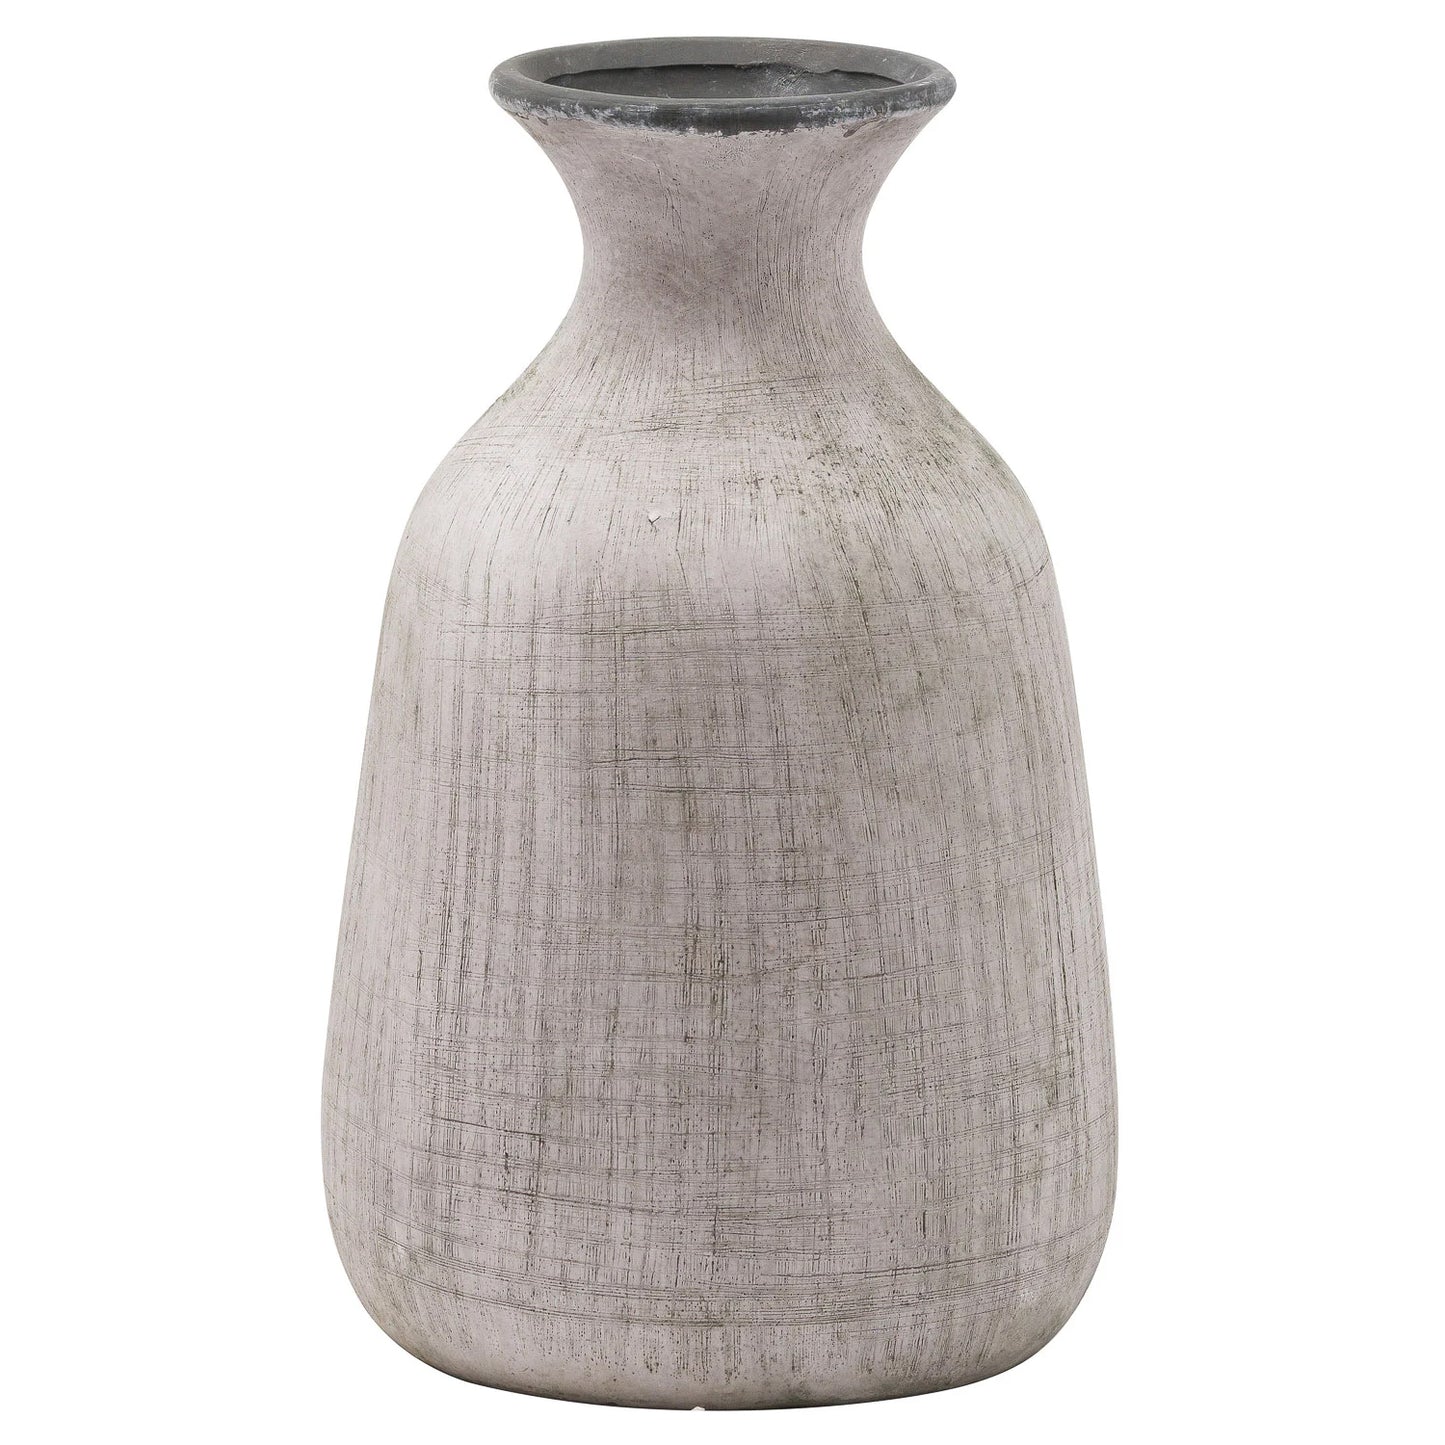 Bloomville ople stone vase